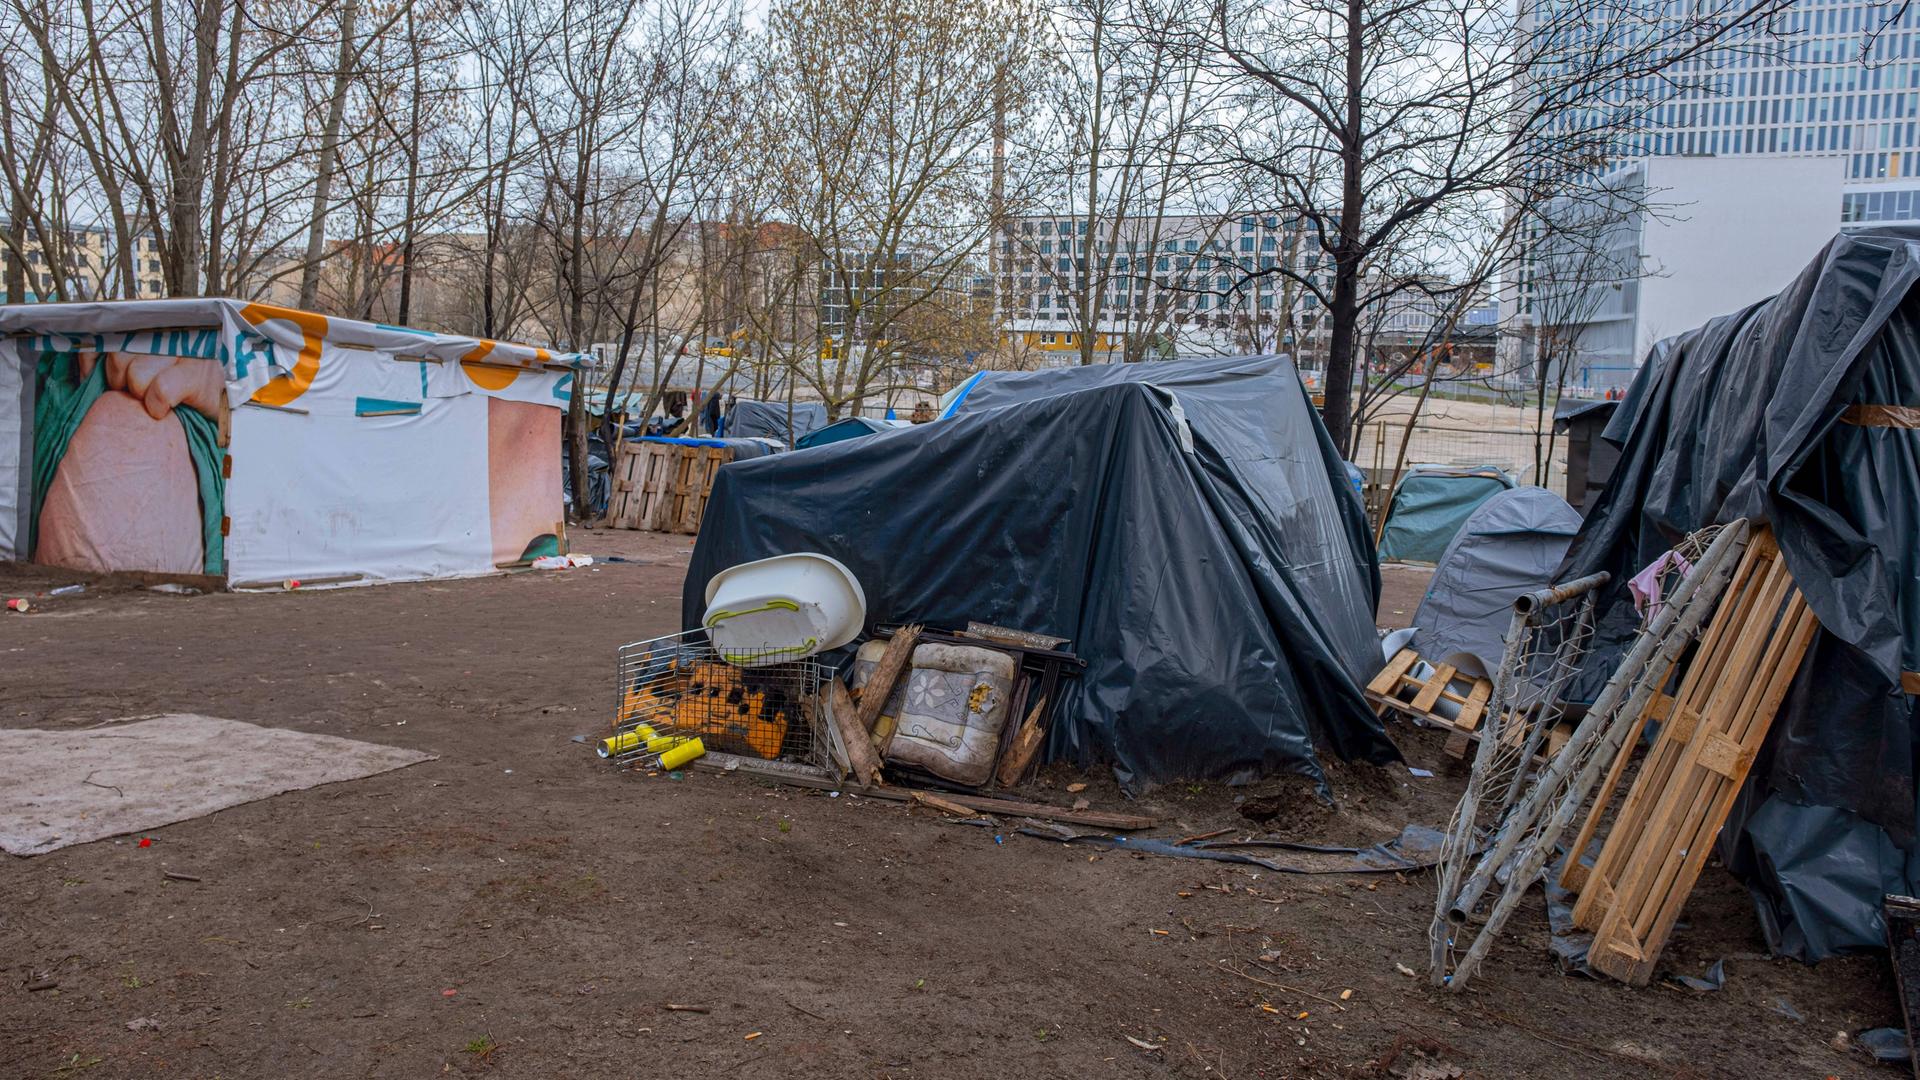 Obdachlosen-Camp unweit des Berliner Hauptbahnhofs 